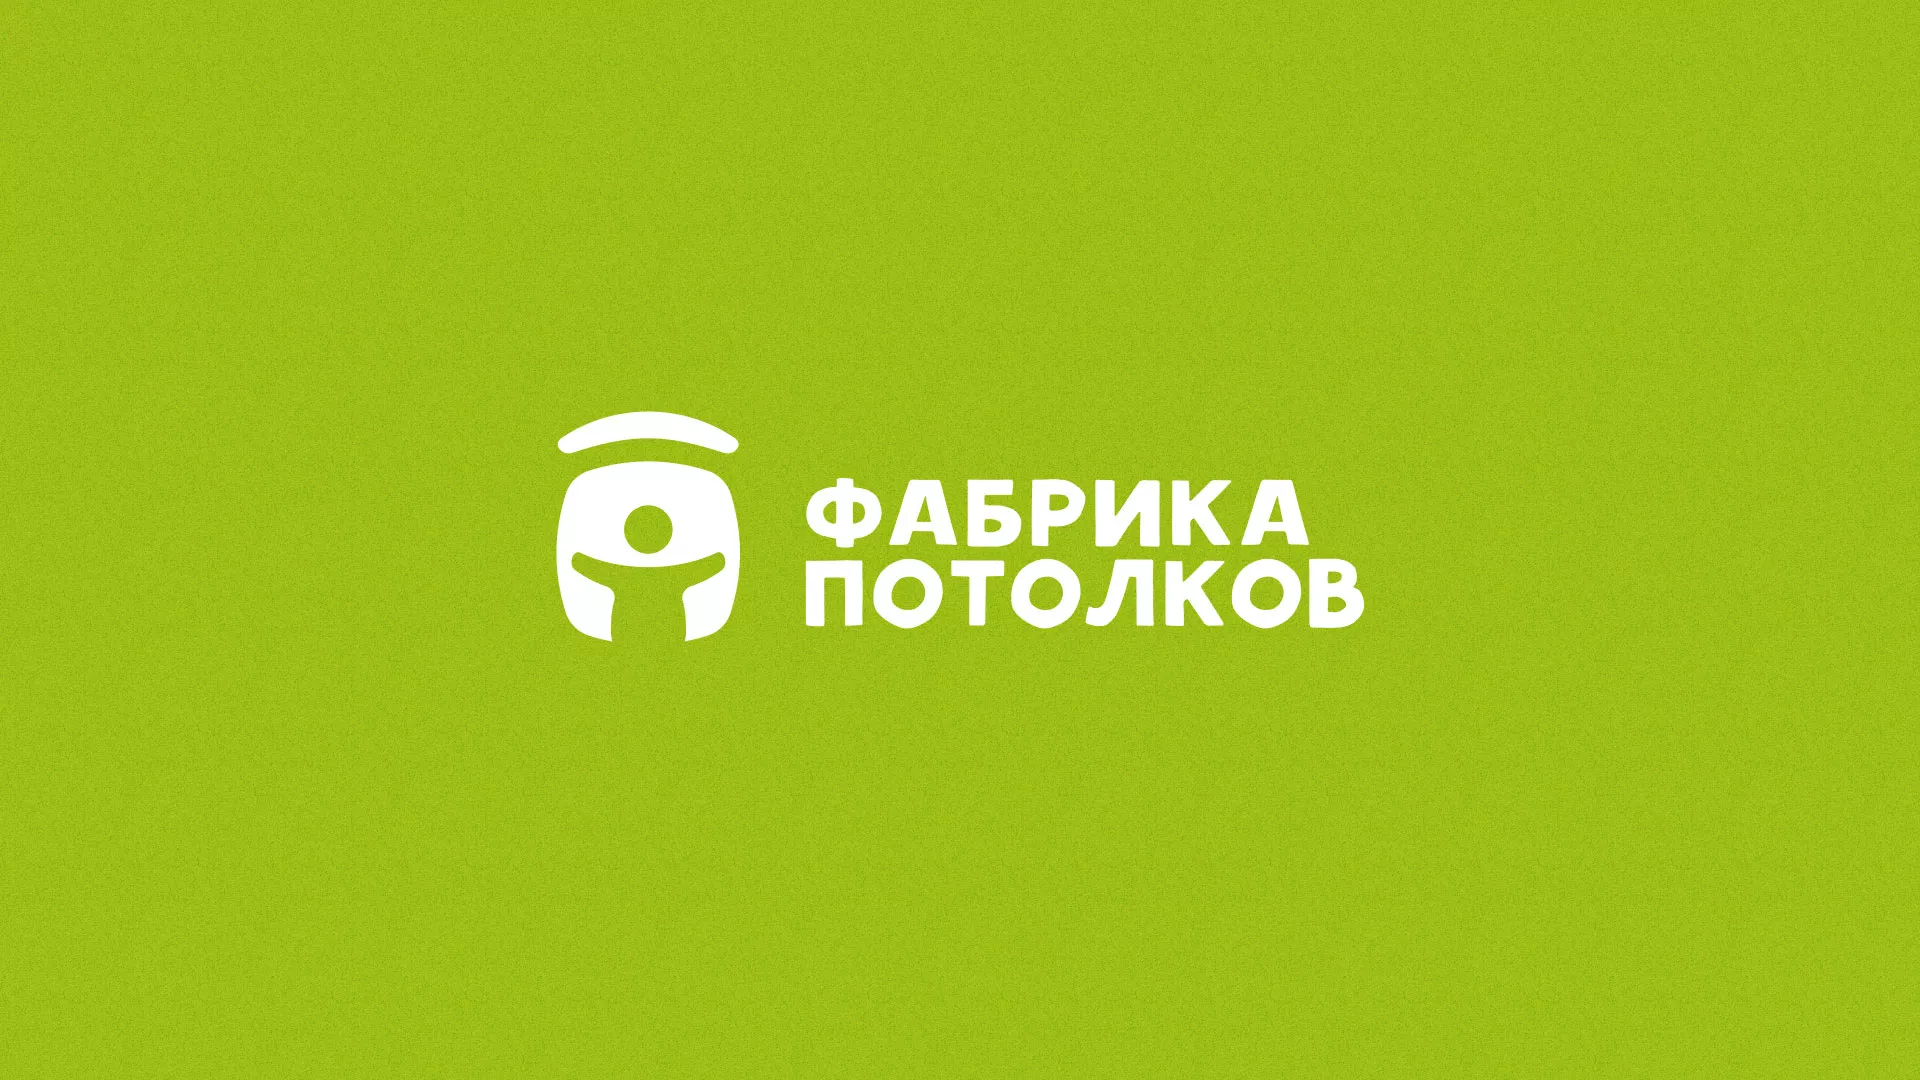 Разработка логотипа для производства натяжных потолков в Гаджиево